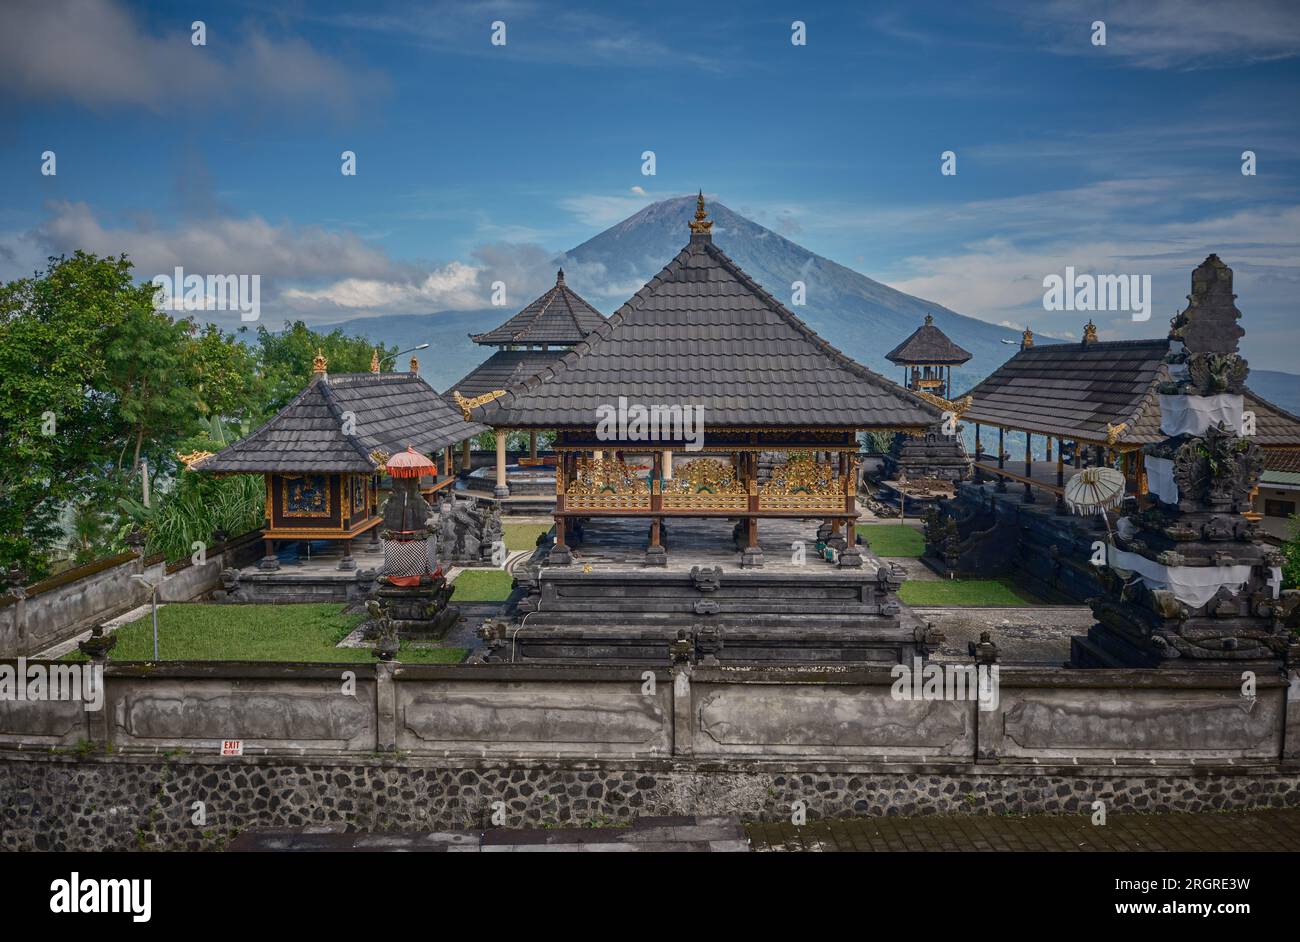 Das Tor zum himmlischen Lempuyang Tempel in Karangasem Regency, Bali indonesien, eine Gruppe von balinesischen Tempeln auf dem Mount Lempuyang. Stockfoto